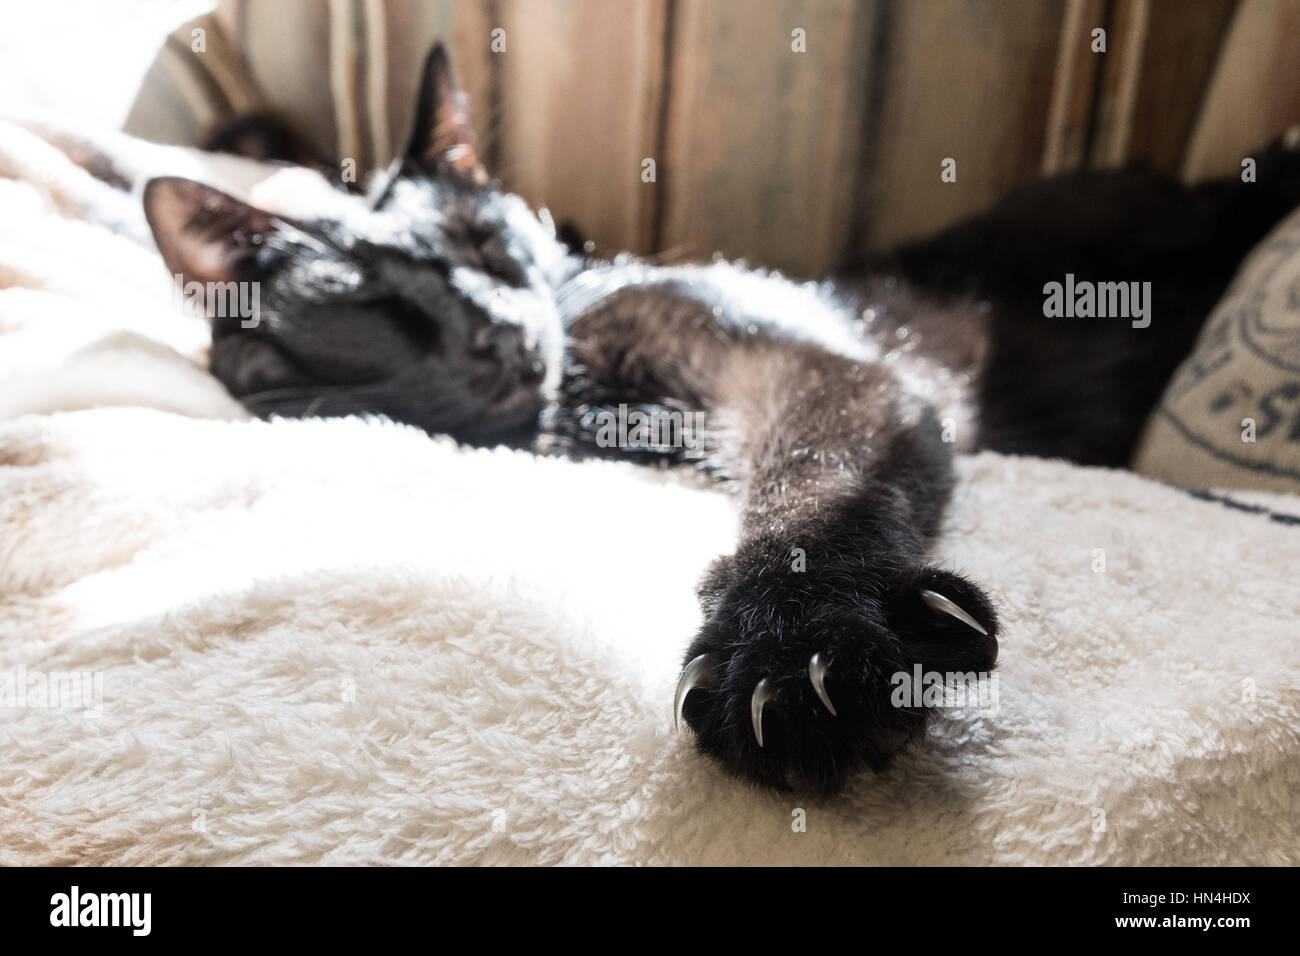 Sleeping cat avec de longs clous exposés en premier plan Banque D'Images